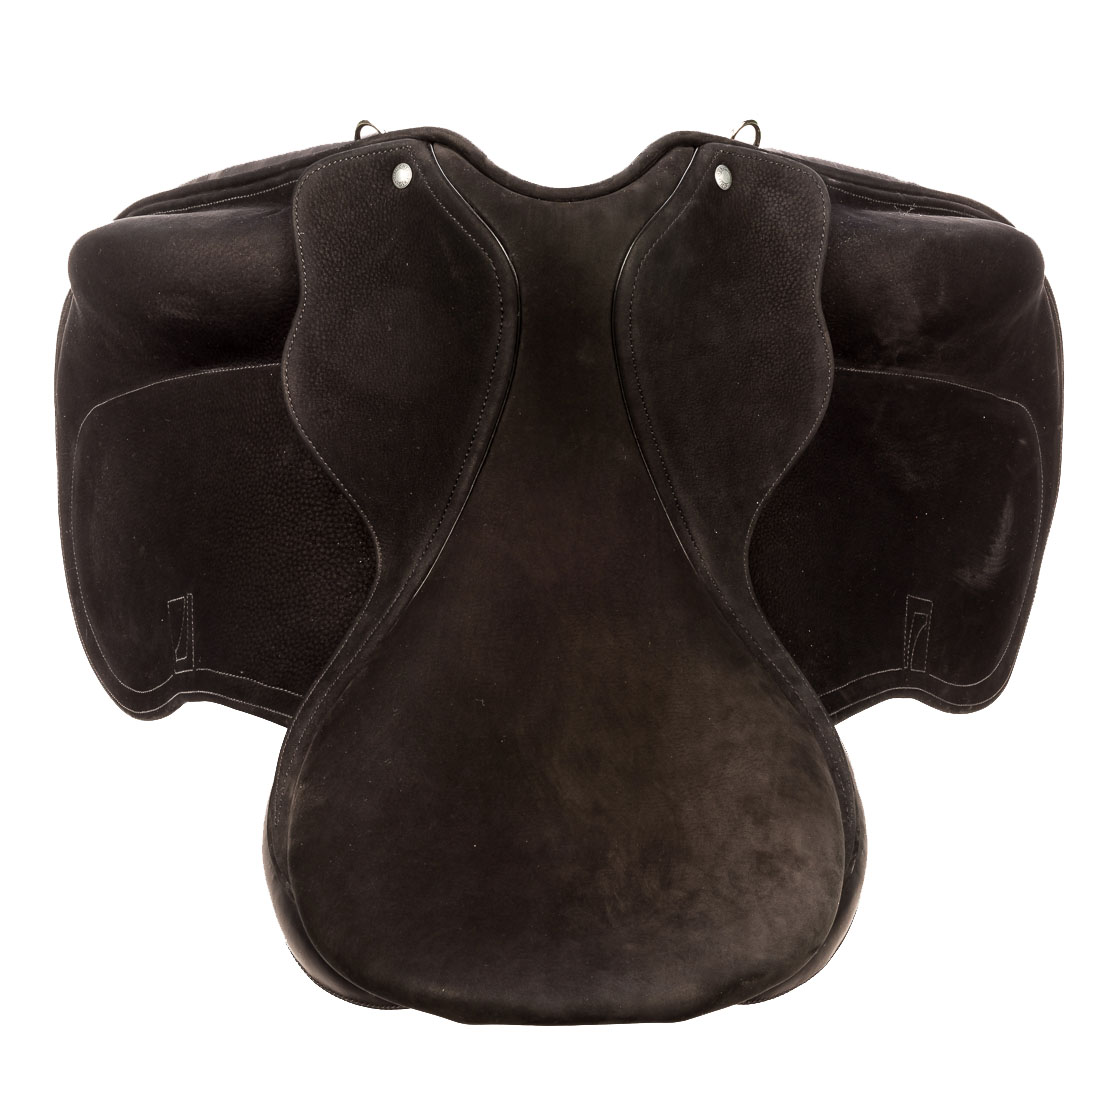 Modèle DNL dressage selle sur-mesure Childéric cuir bespoke saddle fait en France made in France fait main